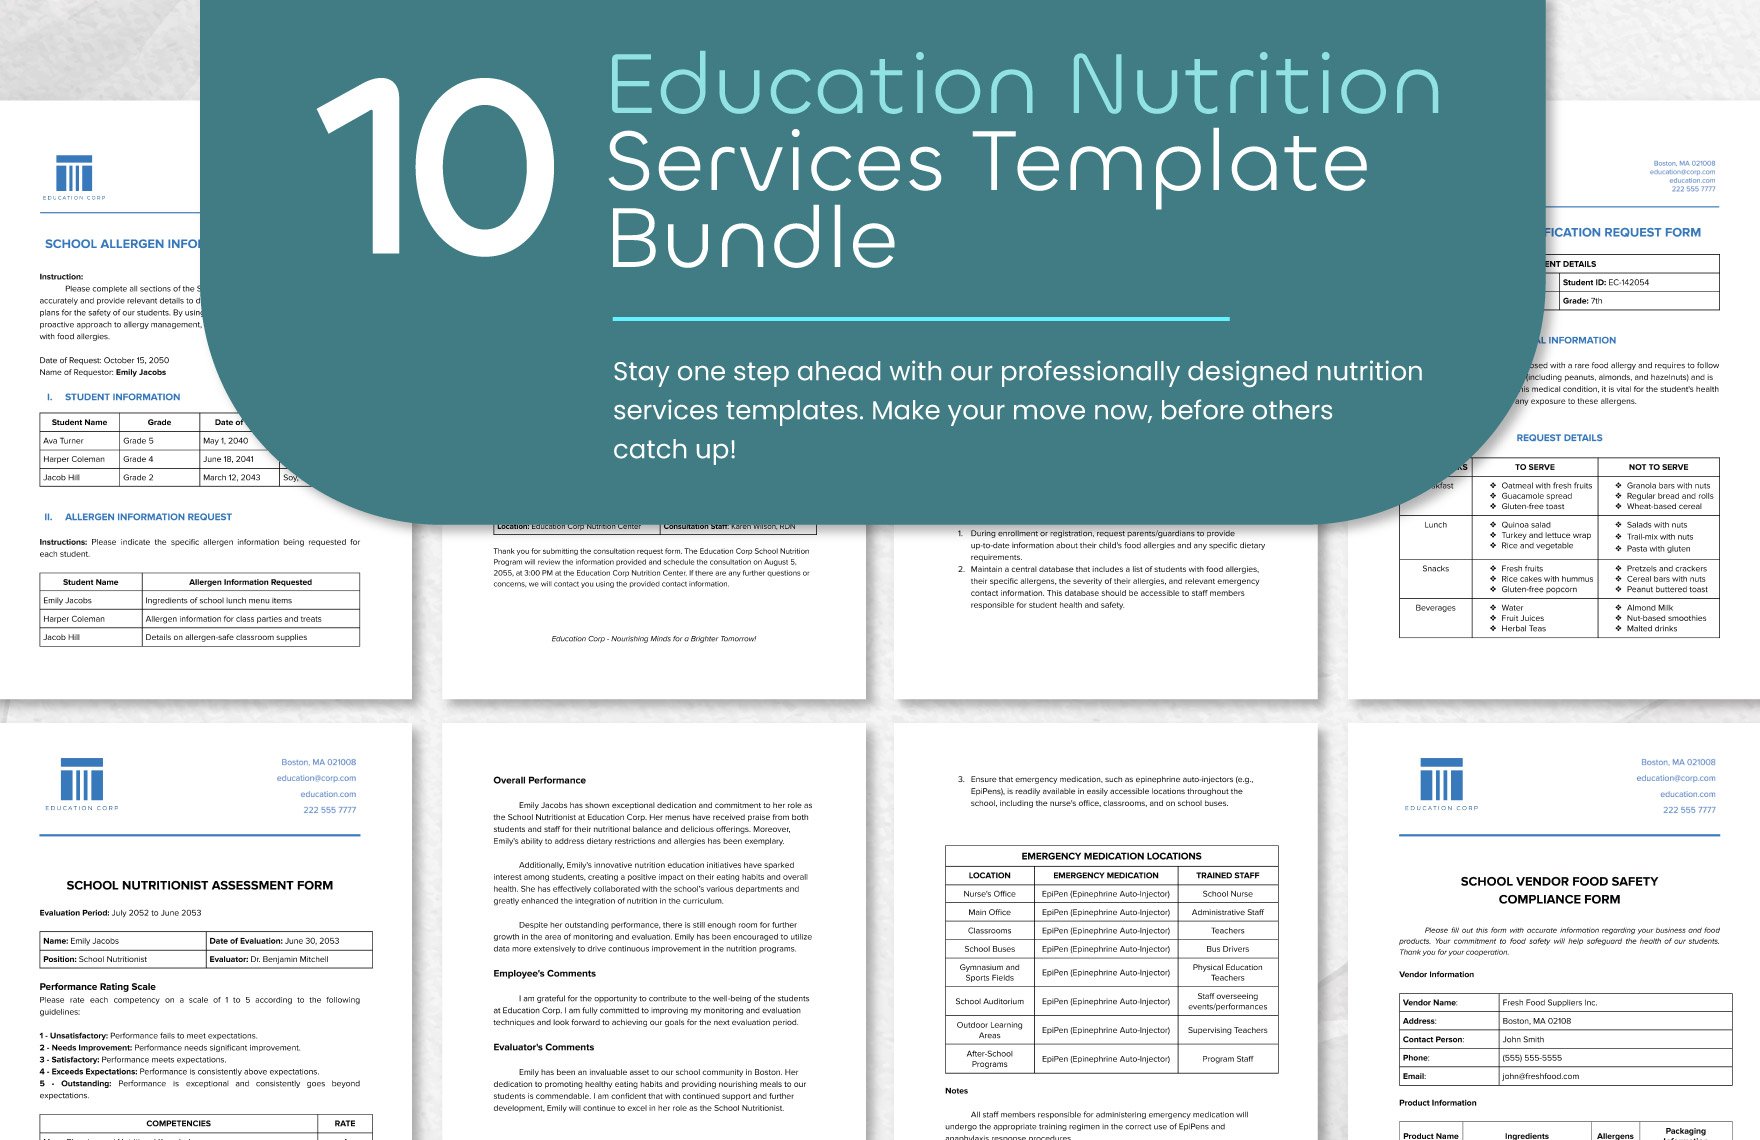 10 Education Nutrition Services Template Bundle